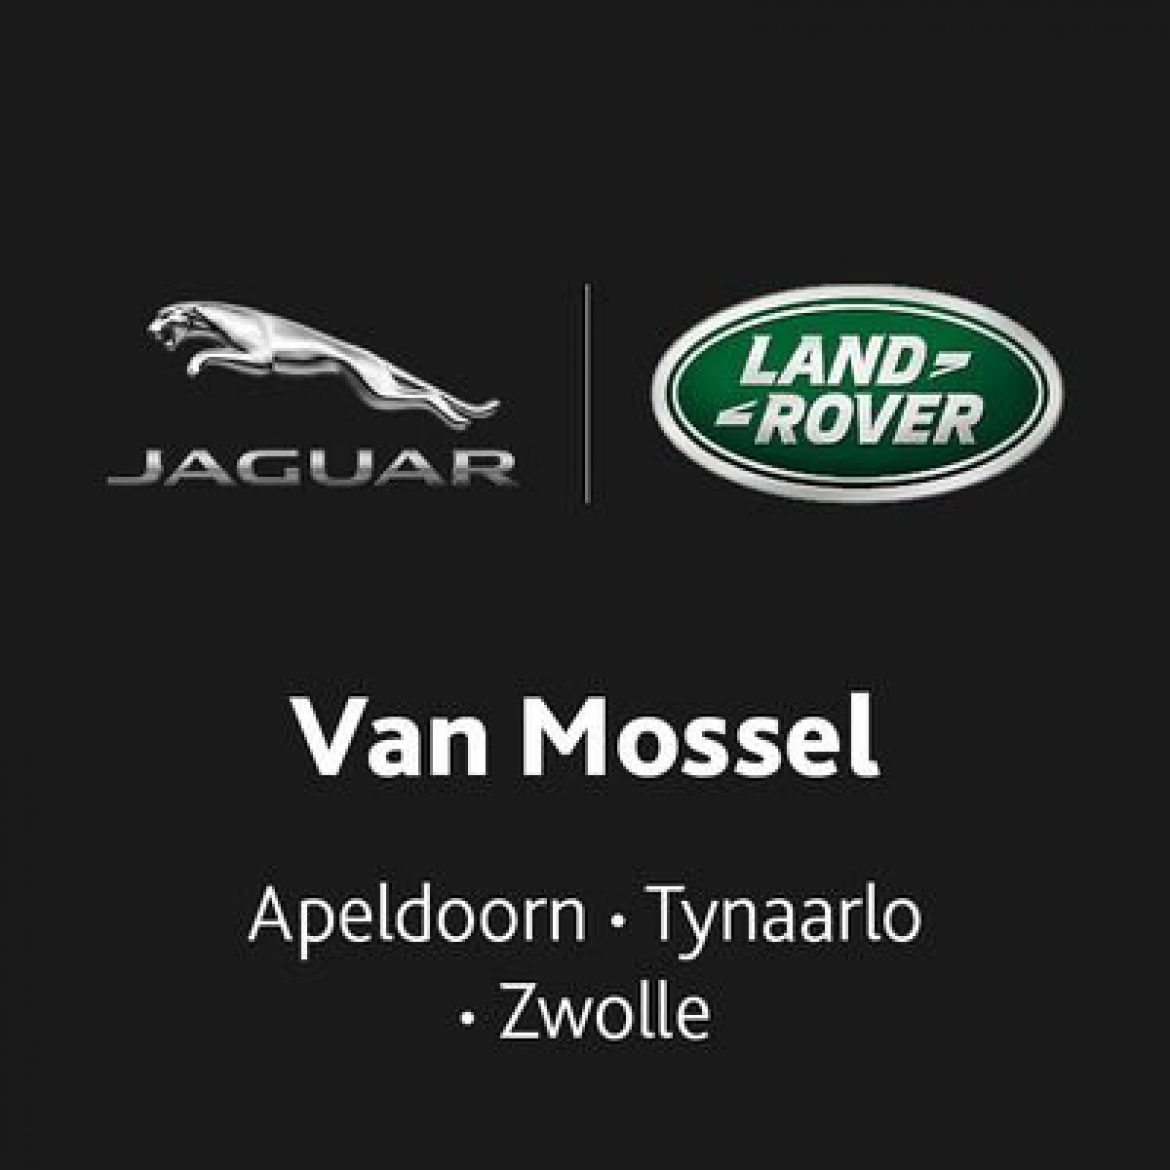 Van Mossel Jaguar/Land Rover